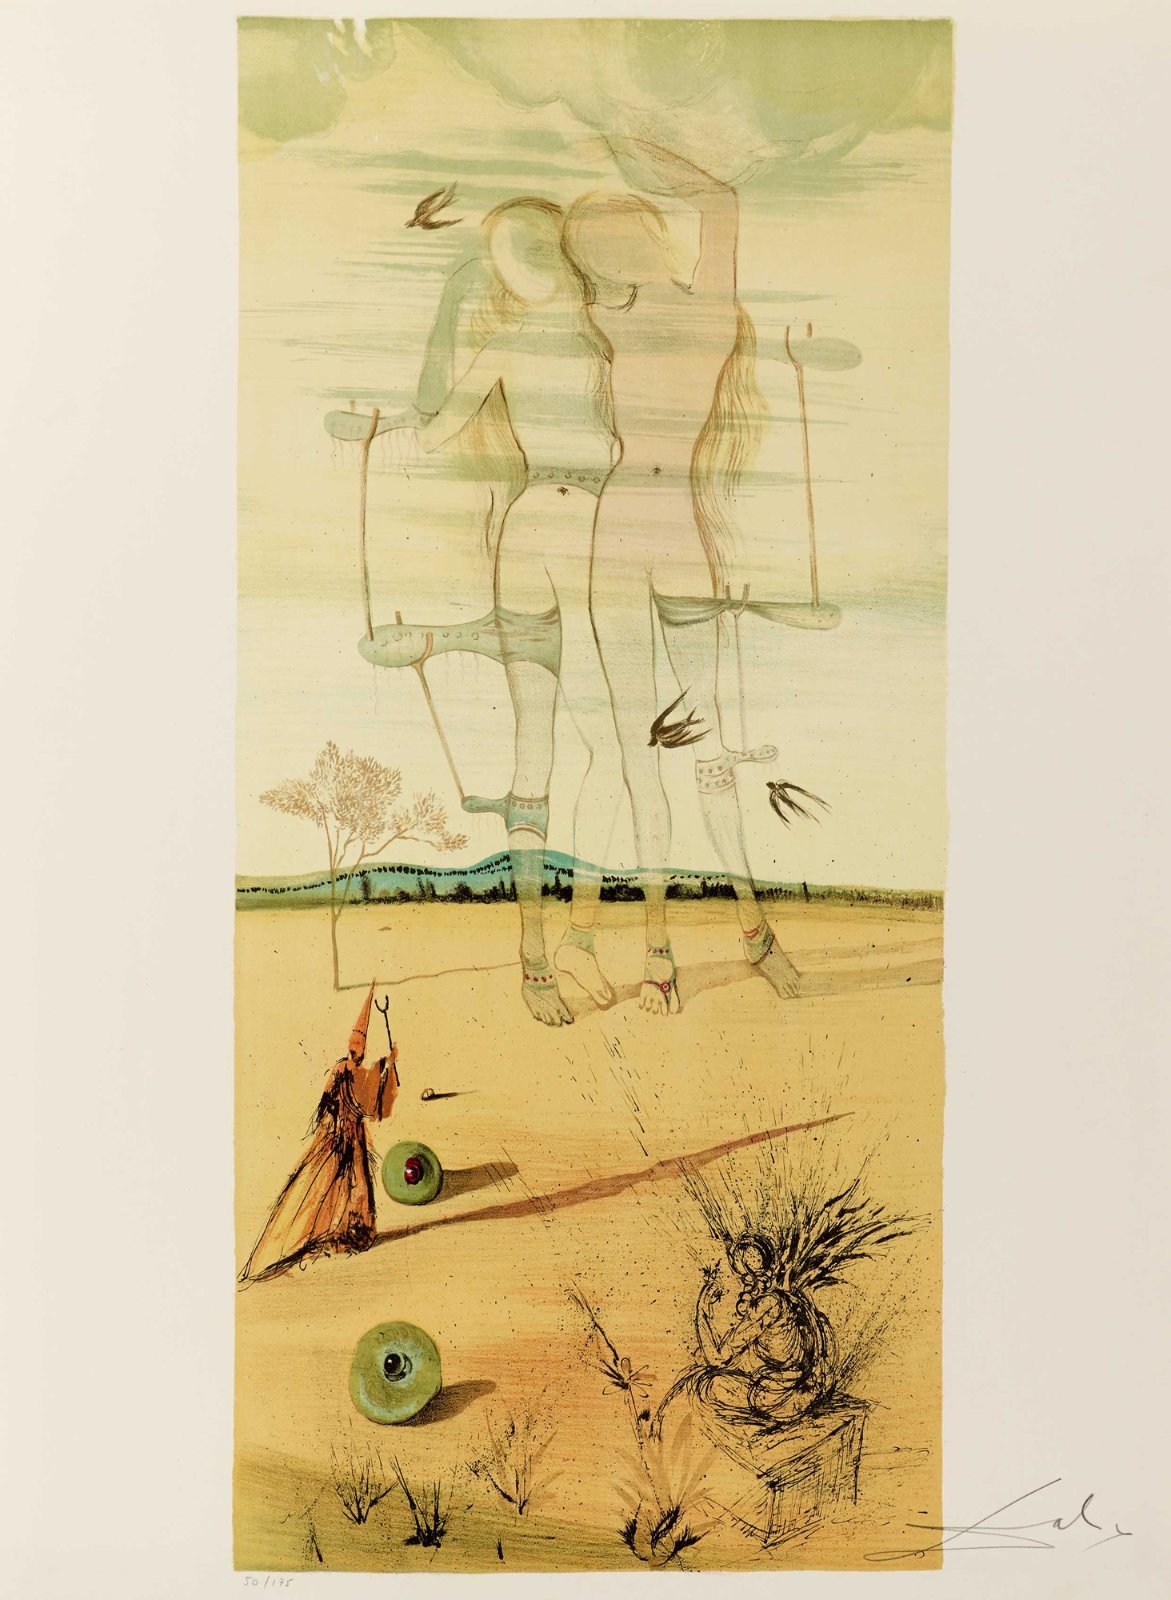 DEUX NUS (GEMEAUX) by Salvador Dalí, 1970